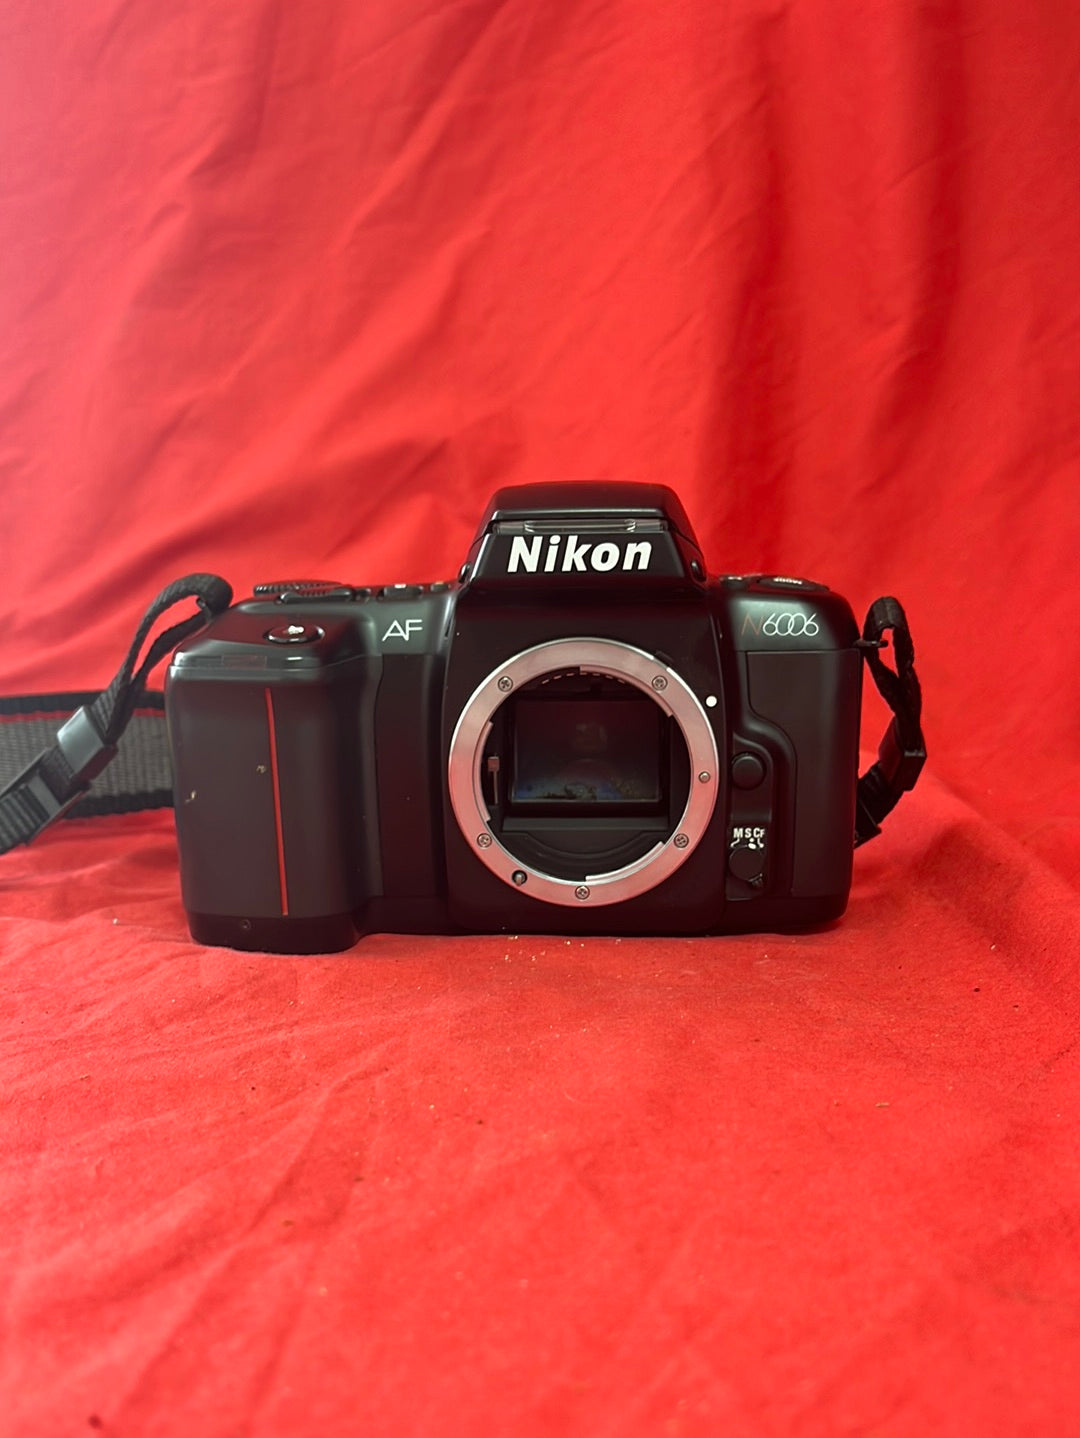 NIKON AF N6006 Camera Body -- Untested